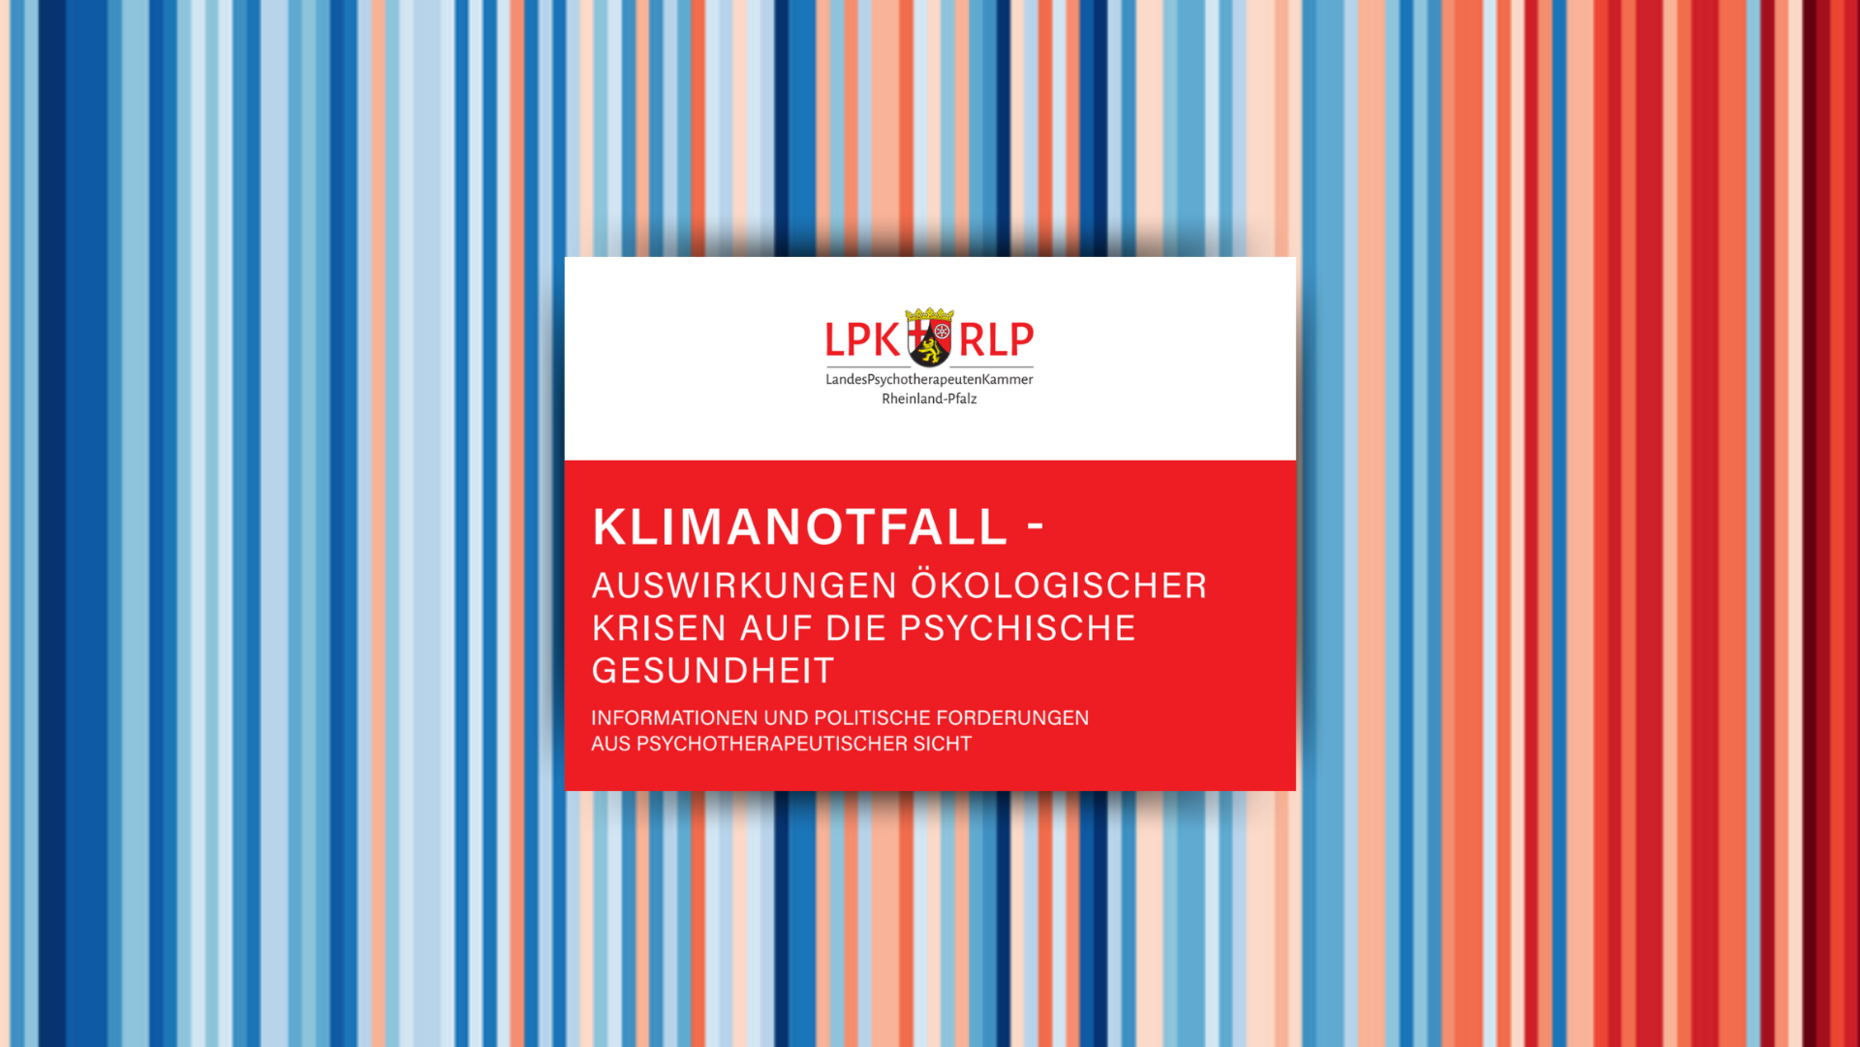 Titelseite der Broschüre "Klimanotfall" der Landespsychotherapeutenkammer Rheinland-Pfalz